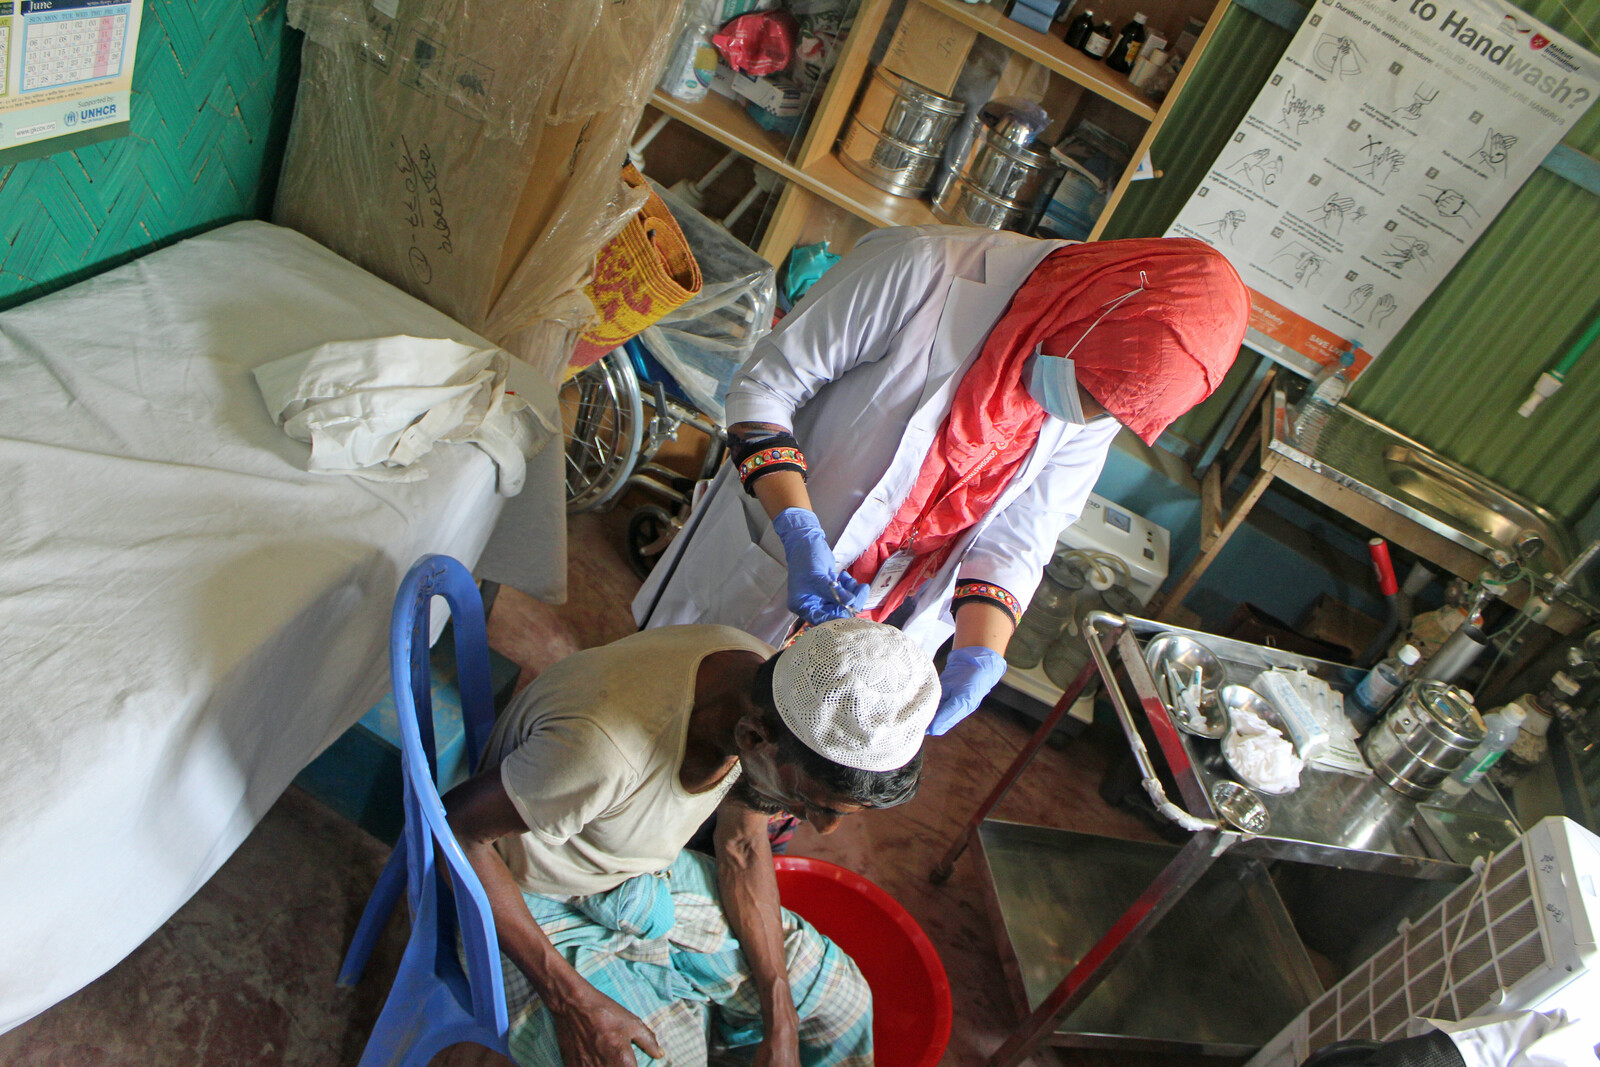 Nach dem Großbrand im Rohingya-Lager behandeln Gesundheitskräfte die verletzten Menschen